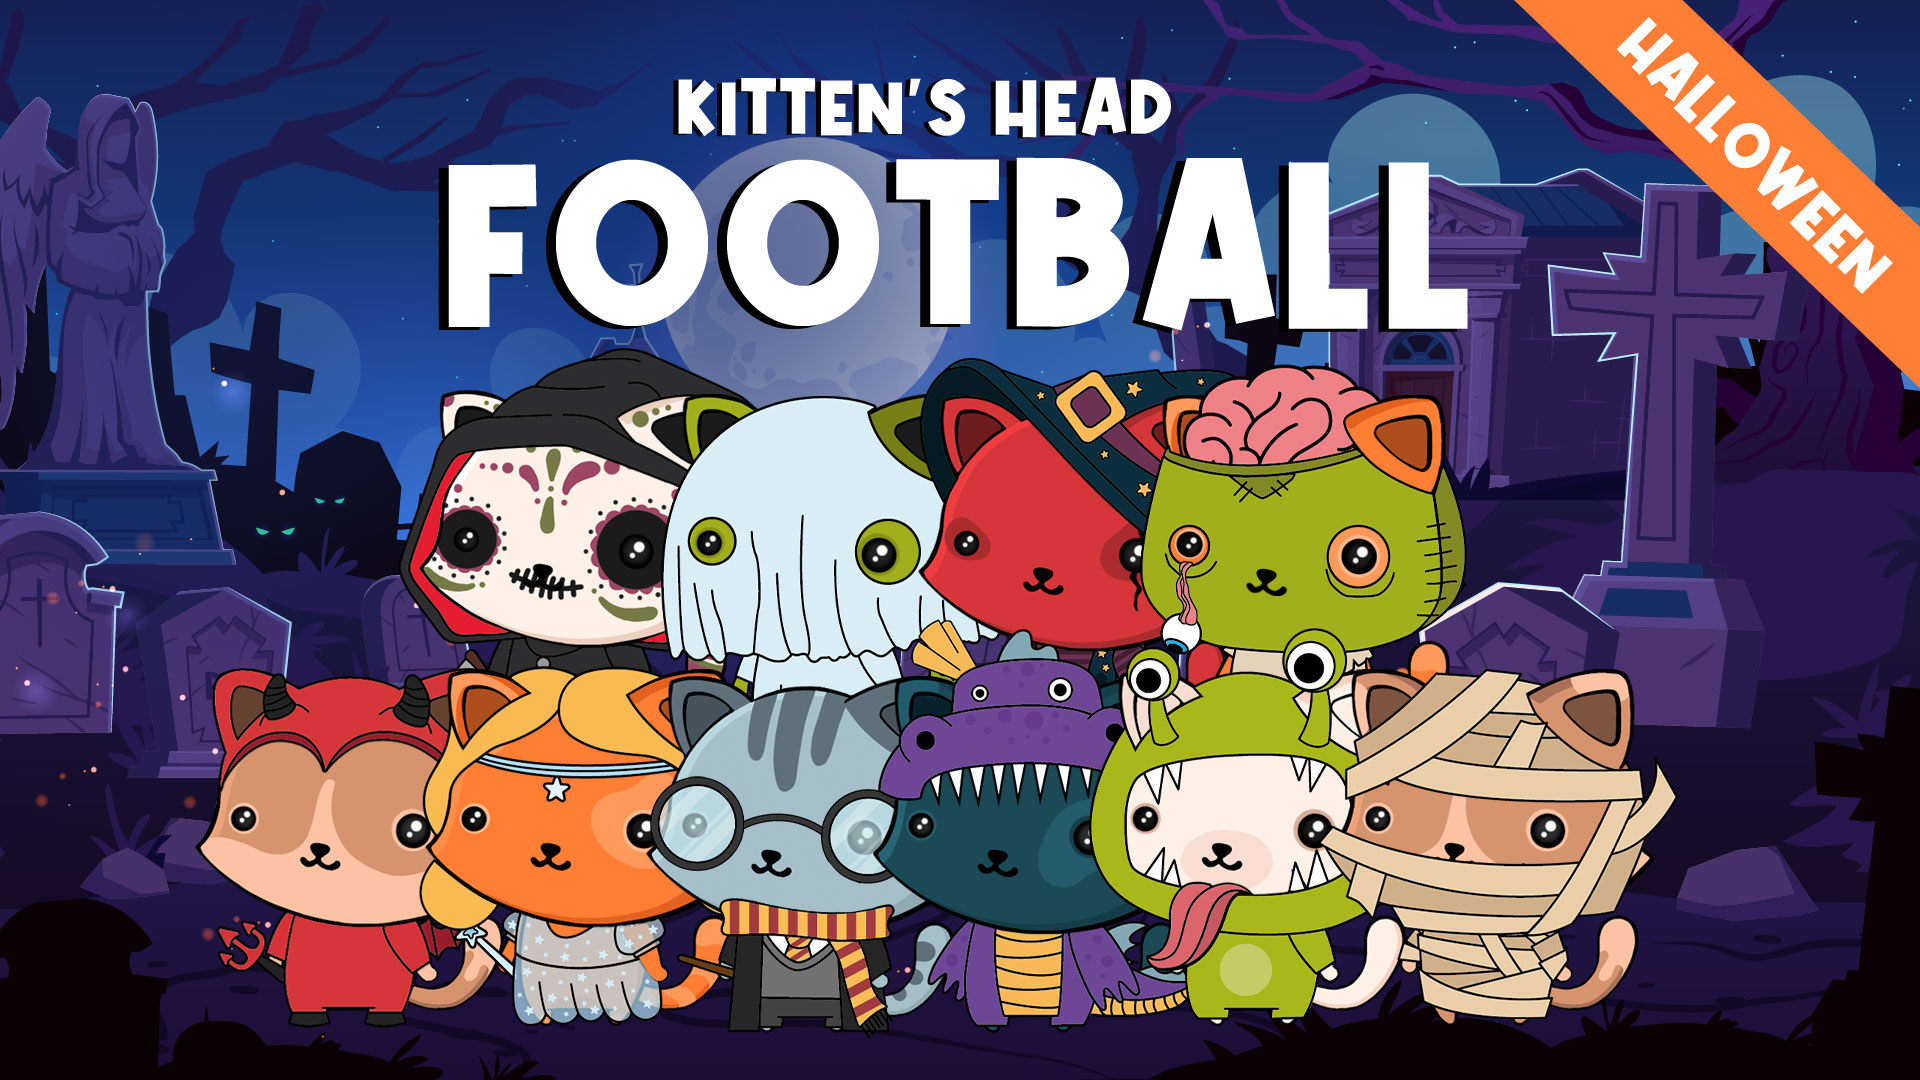 Kitten's Head Football: Halloween